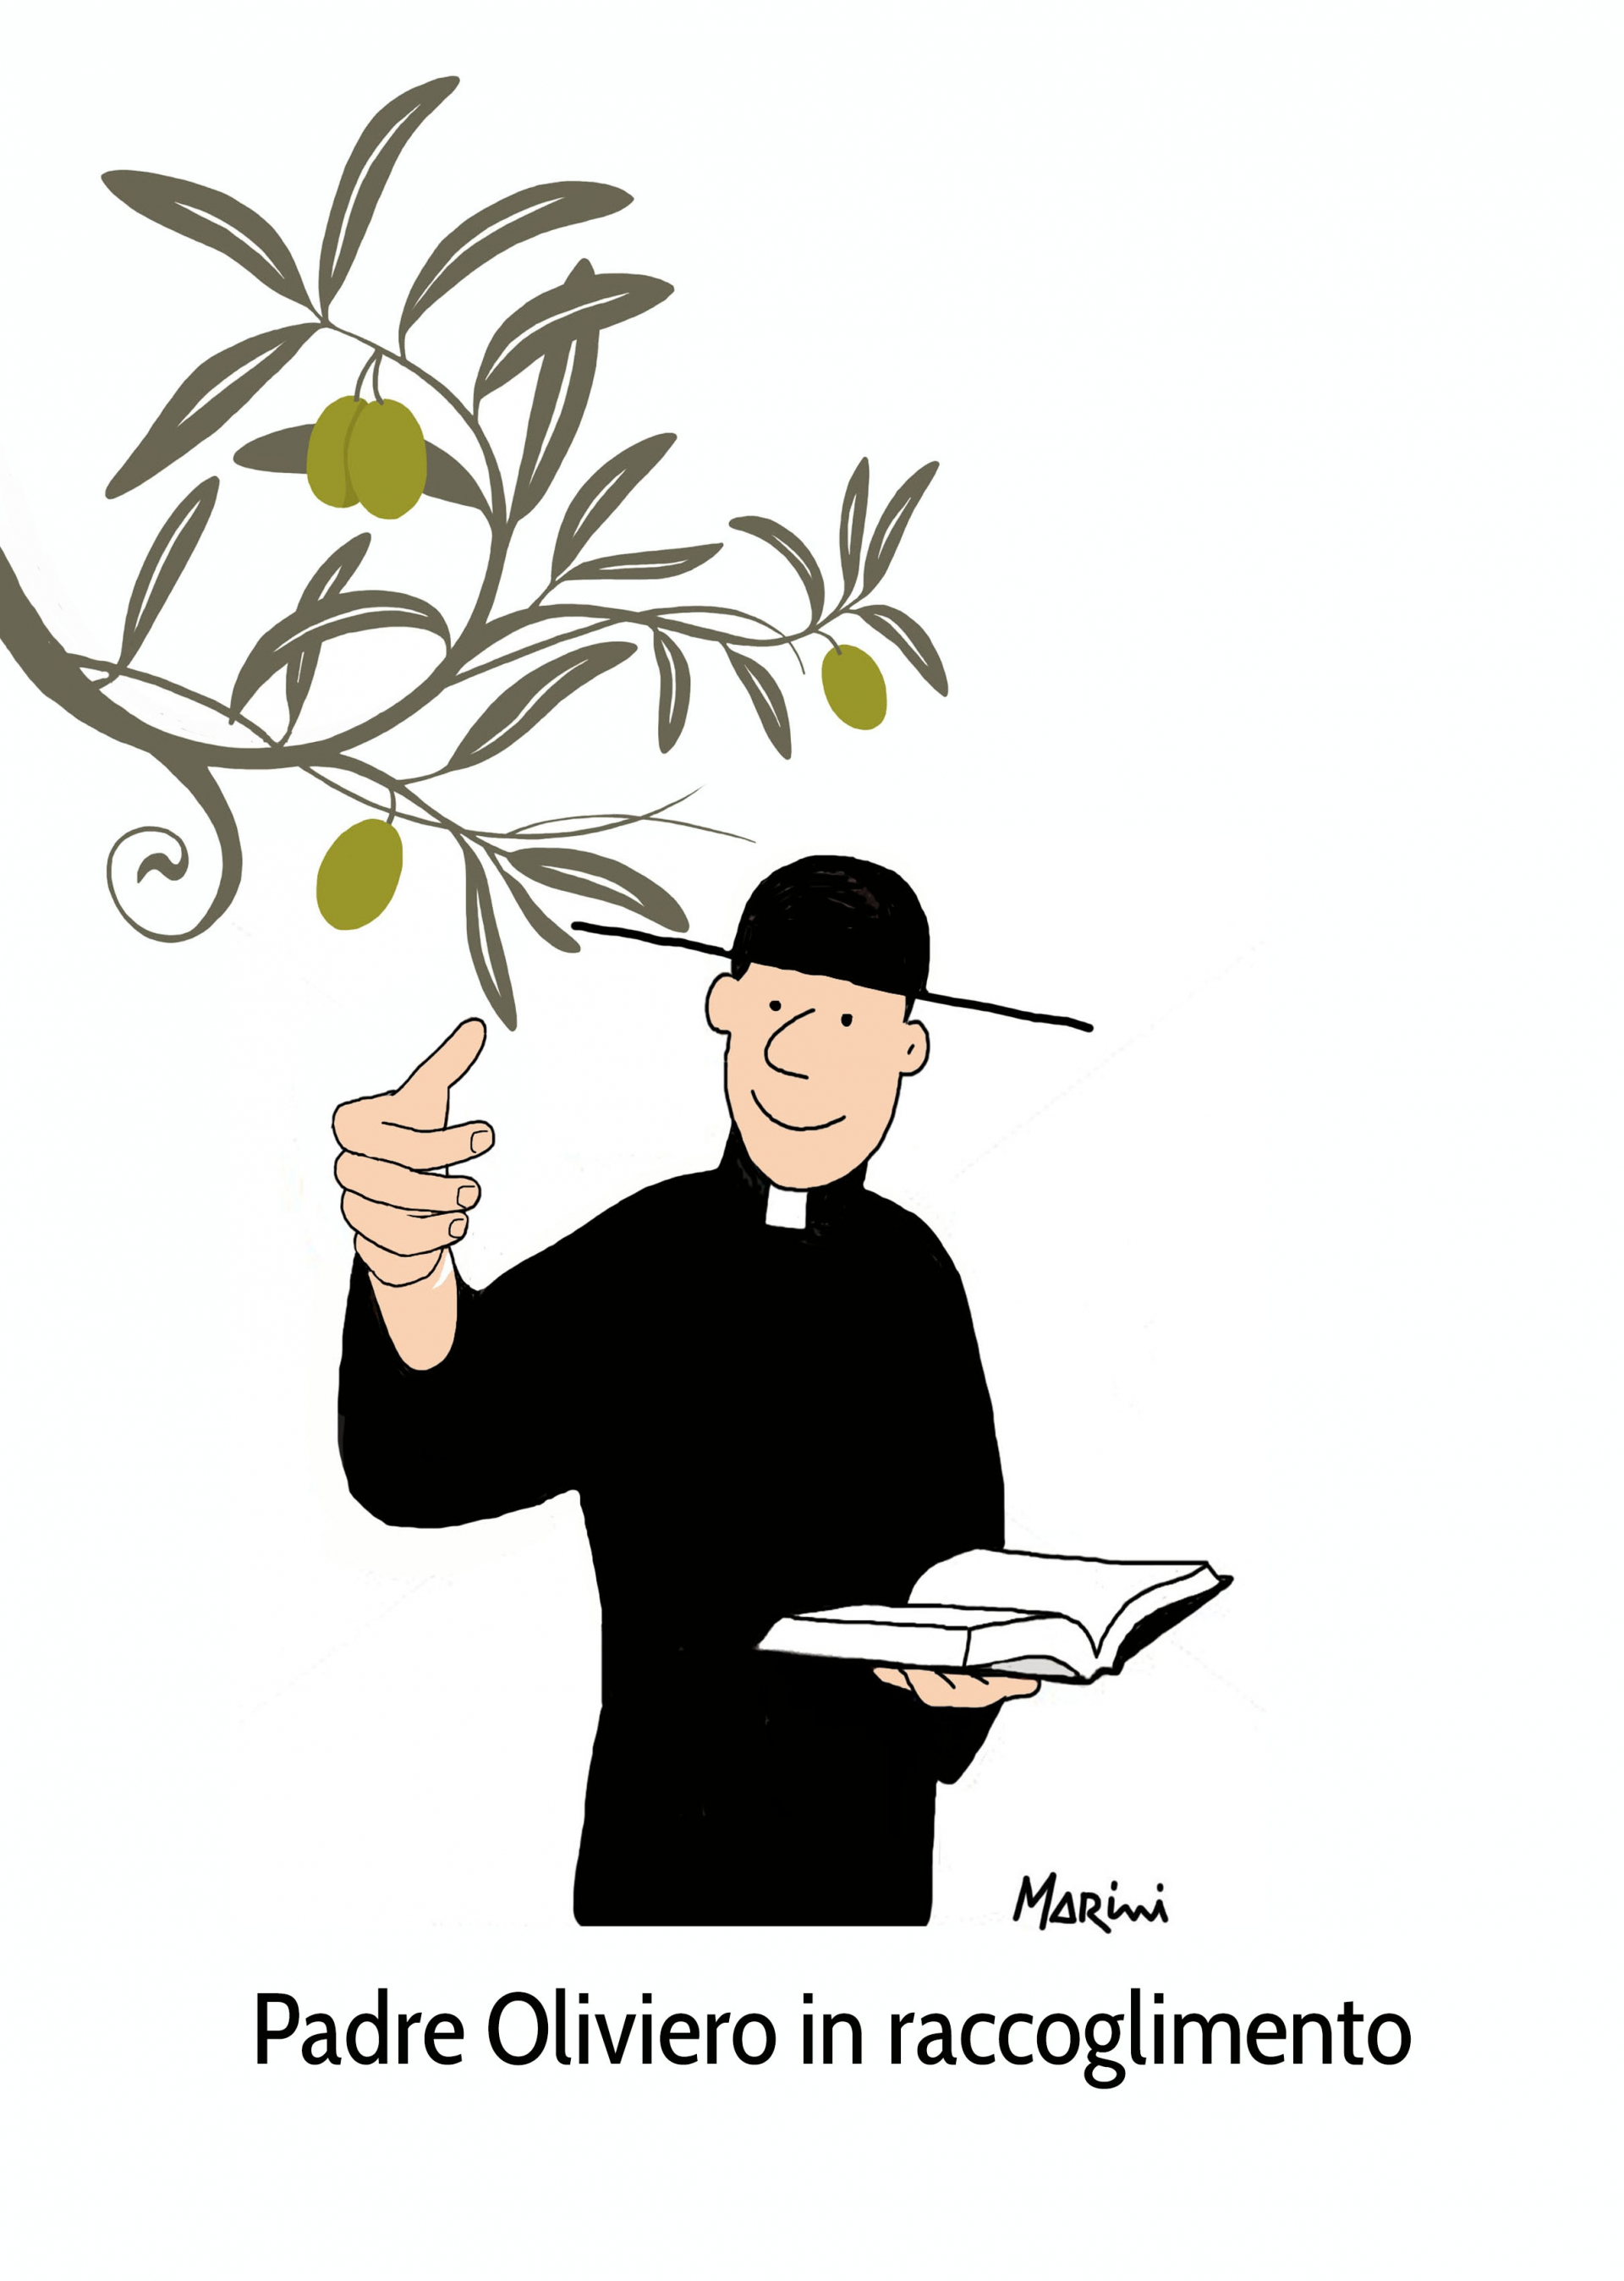 Il senso religioso dell'olivo